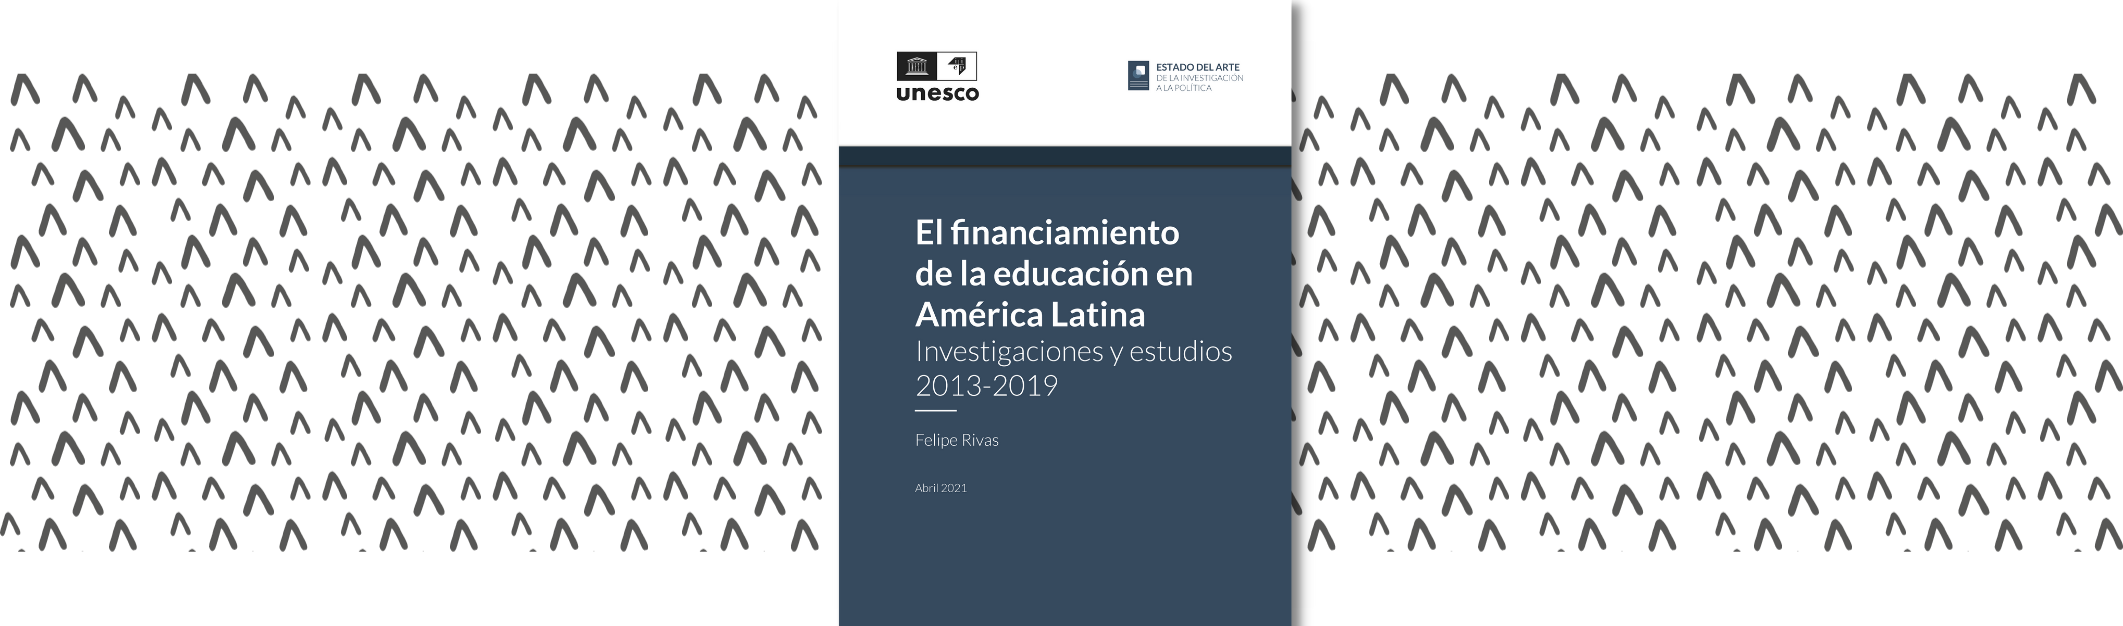 El Financiamiento de la educación en América Latina: investigaciones y estudios 2013-2019